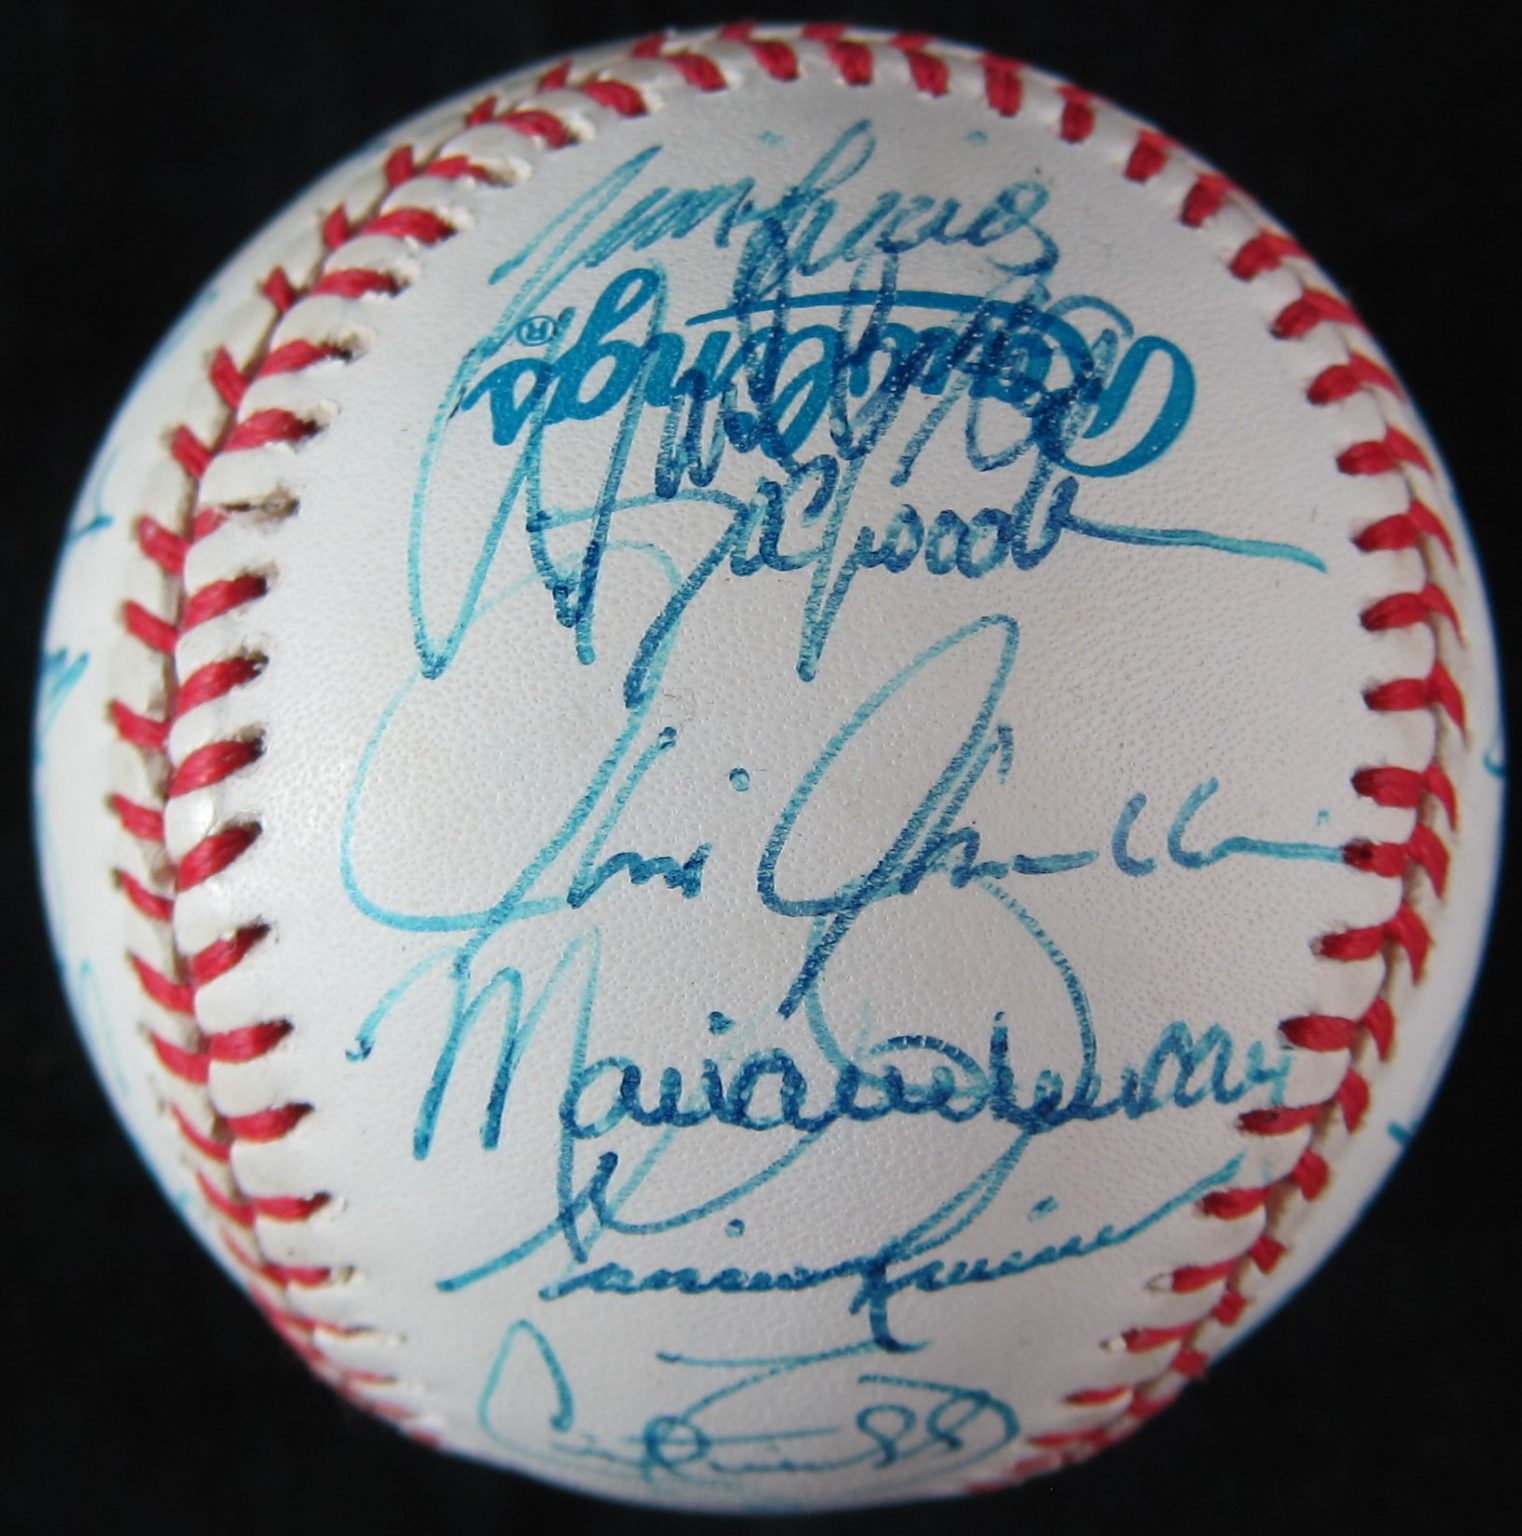 1996 New York Yankees Team Signed Baseball - Memorabilia Center